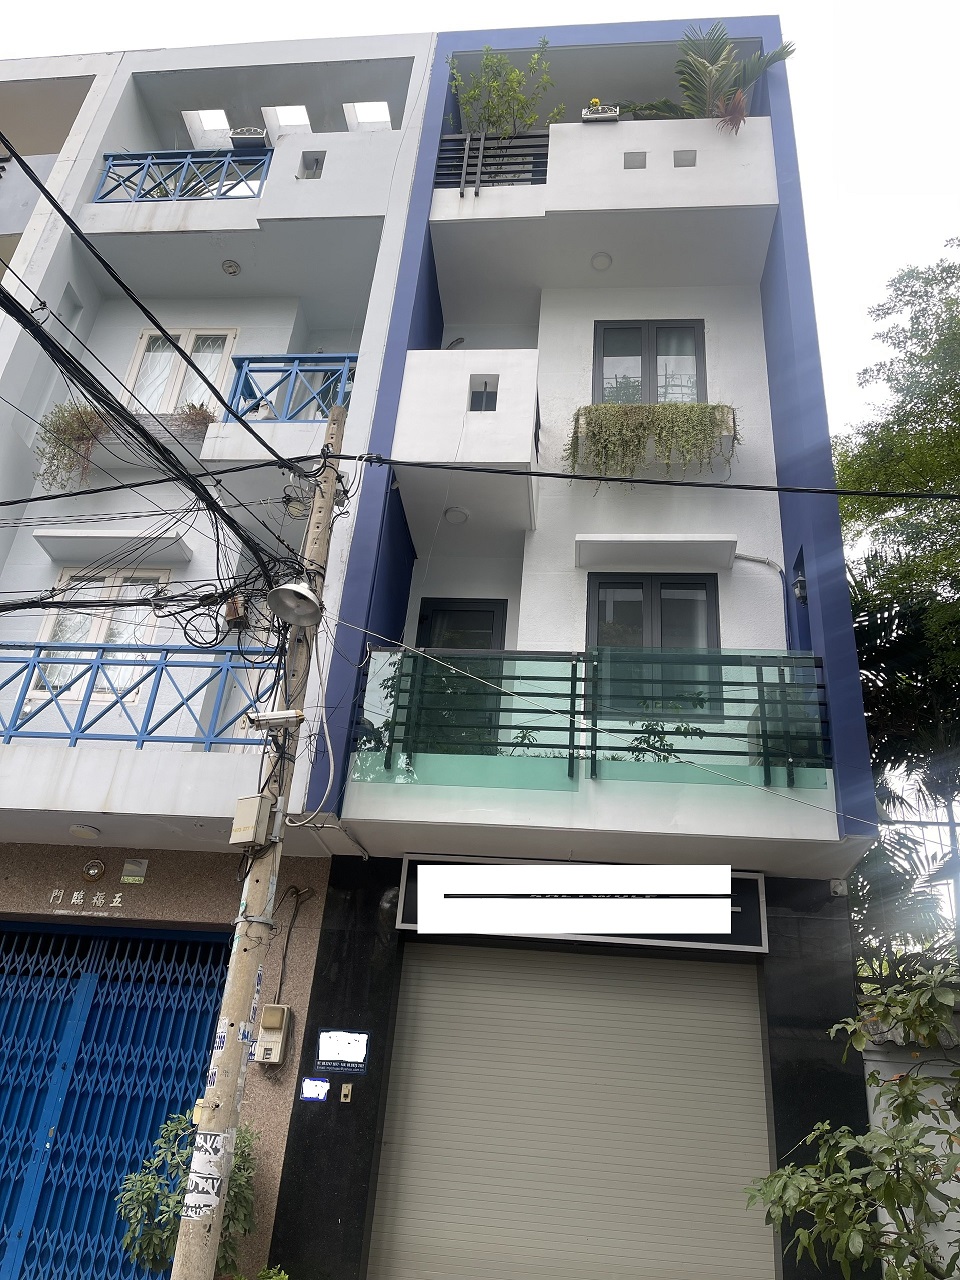 Bán nhà đường Huỳnh Thiện Lộc, quận Tân Phú, 65,4m², Giá 10,5 tỷ